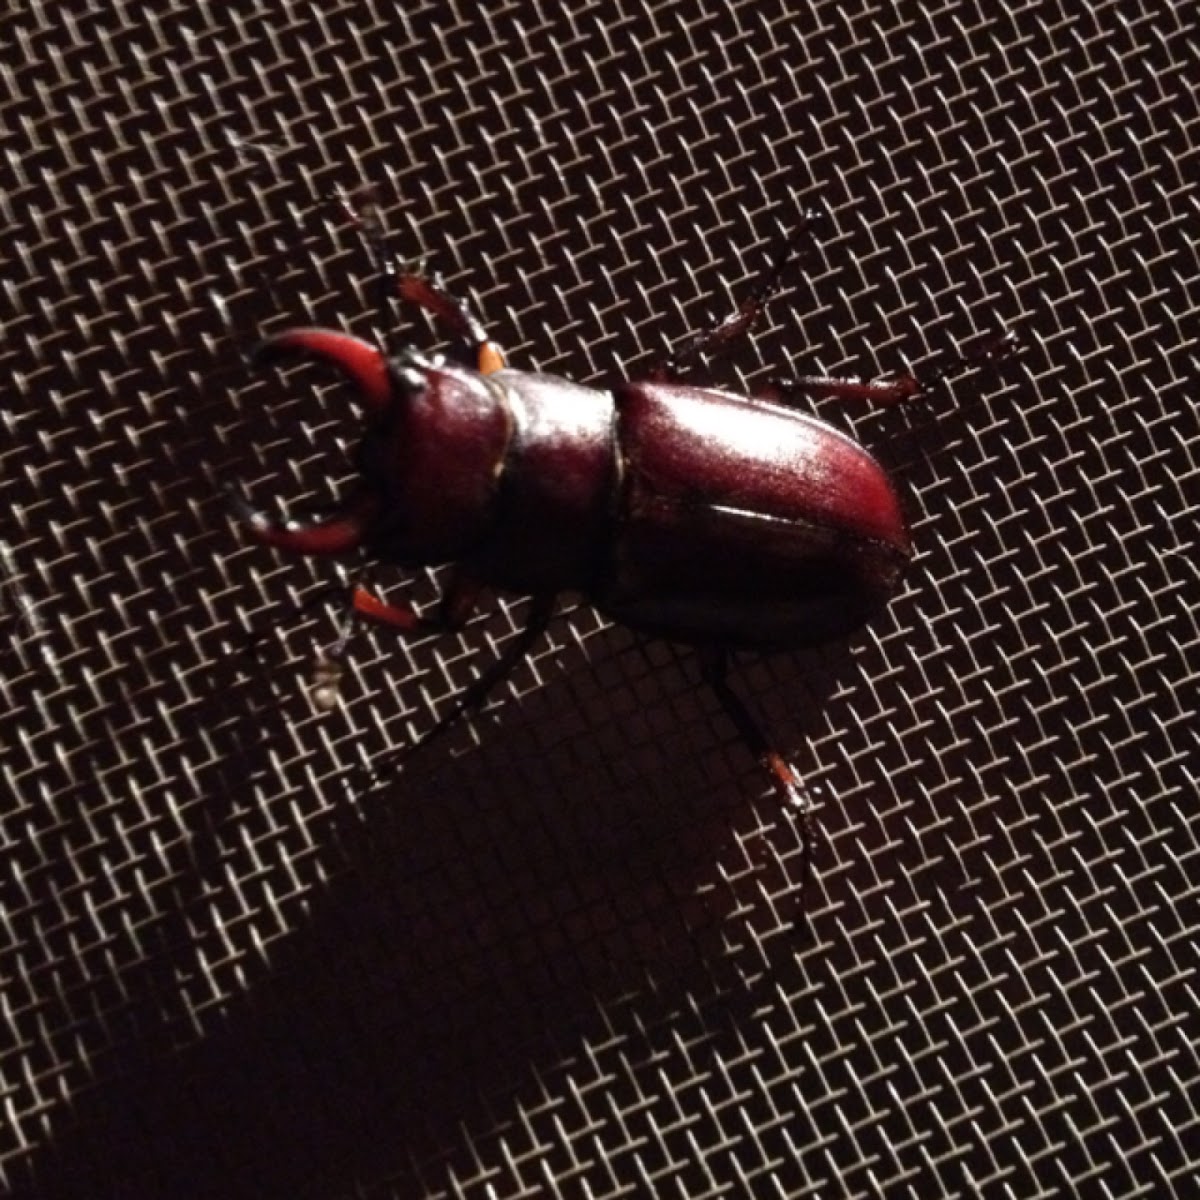 Reddish-brown Stag Beetle